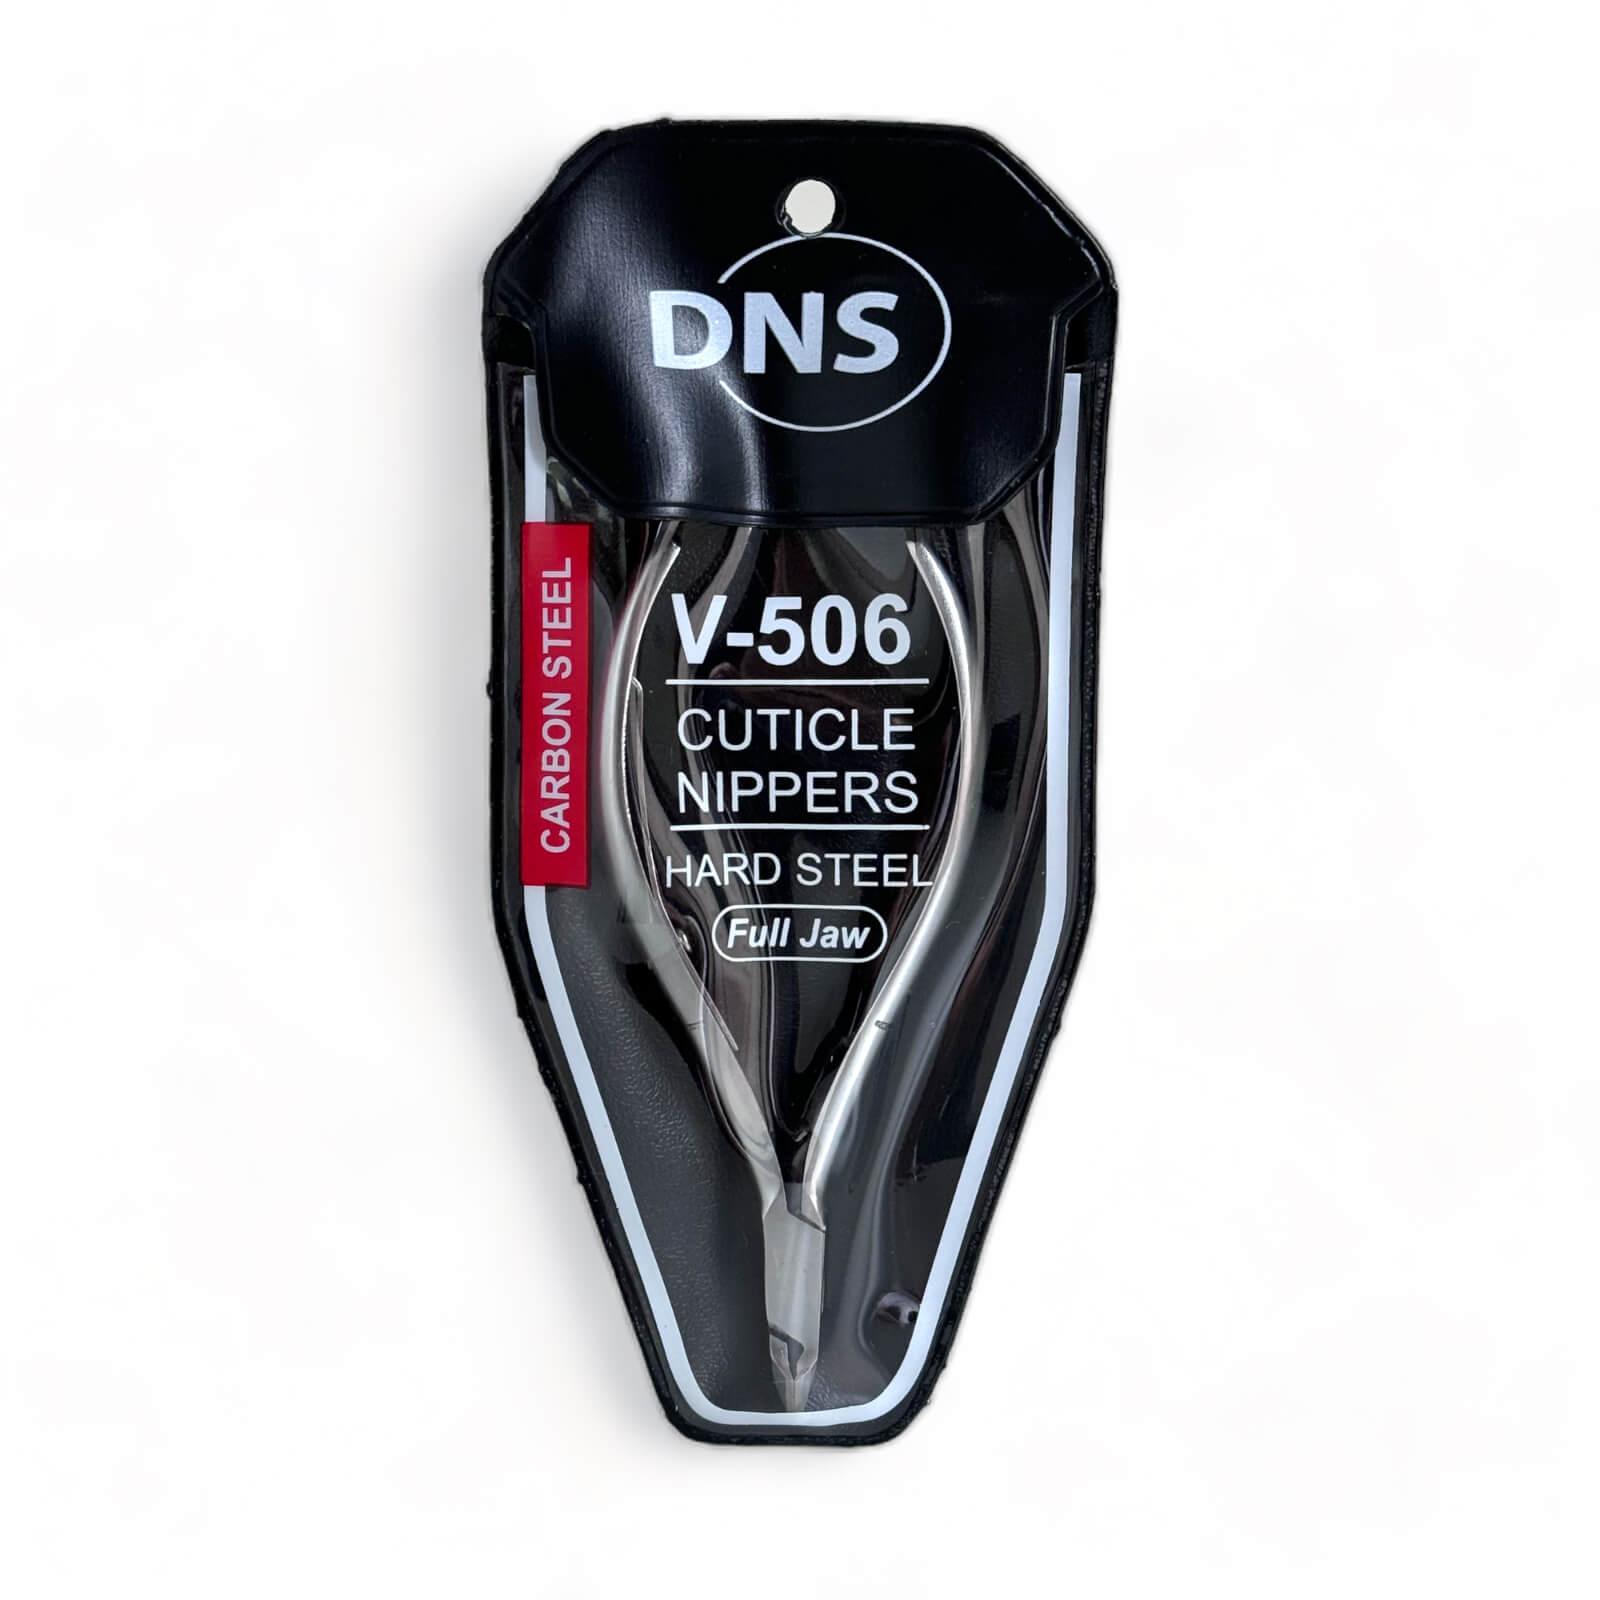 DNS Cuticle Nipper Hard Steel V506 Full Jaw